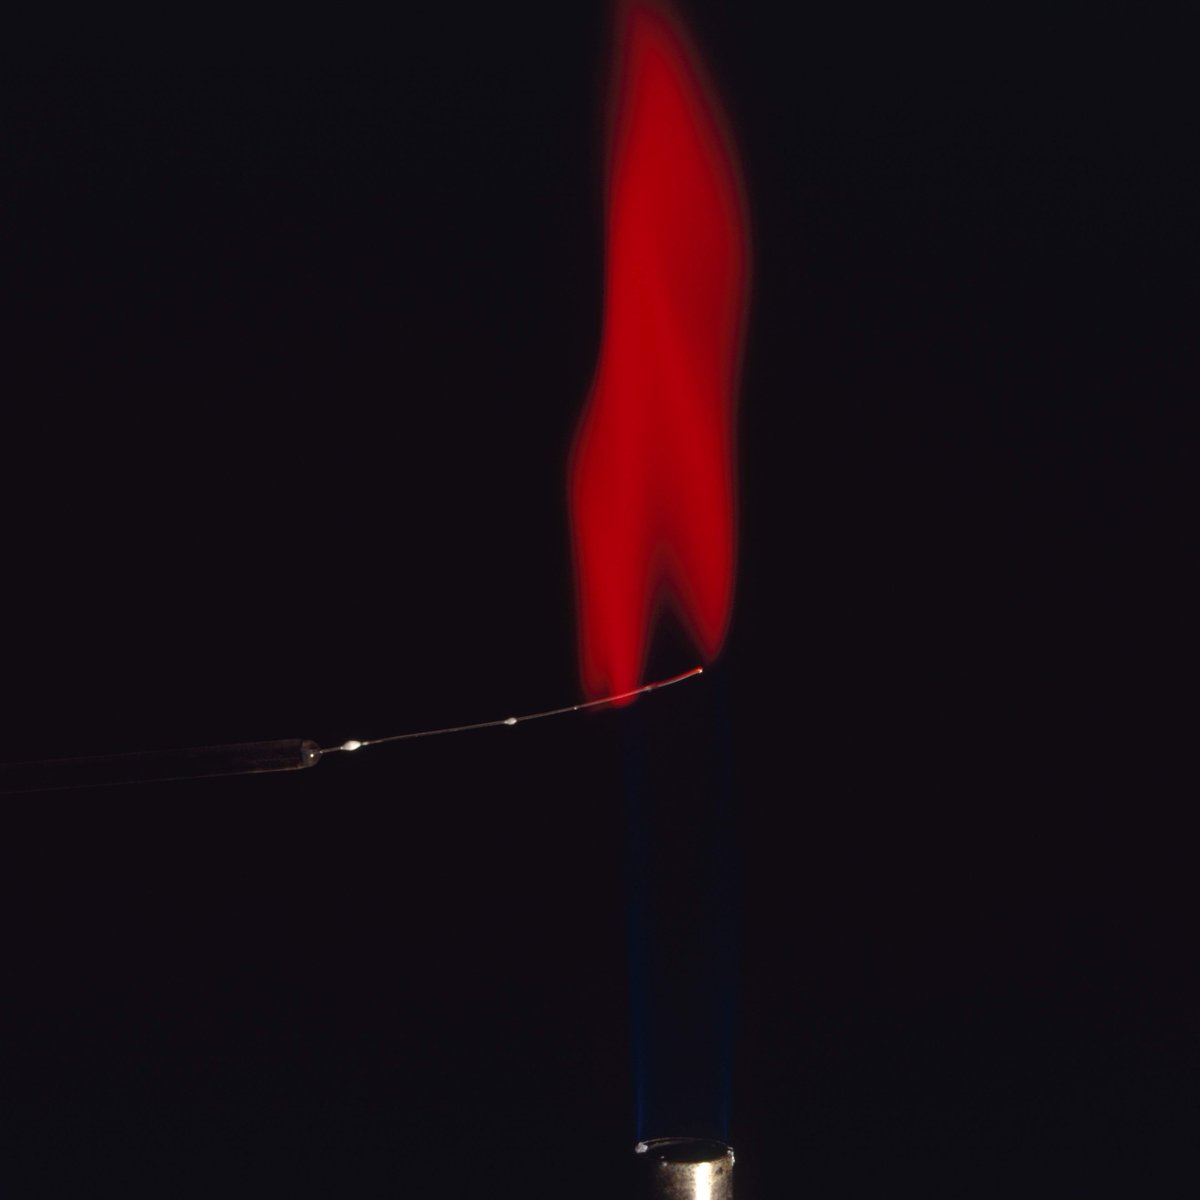 Strontium flame